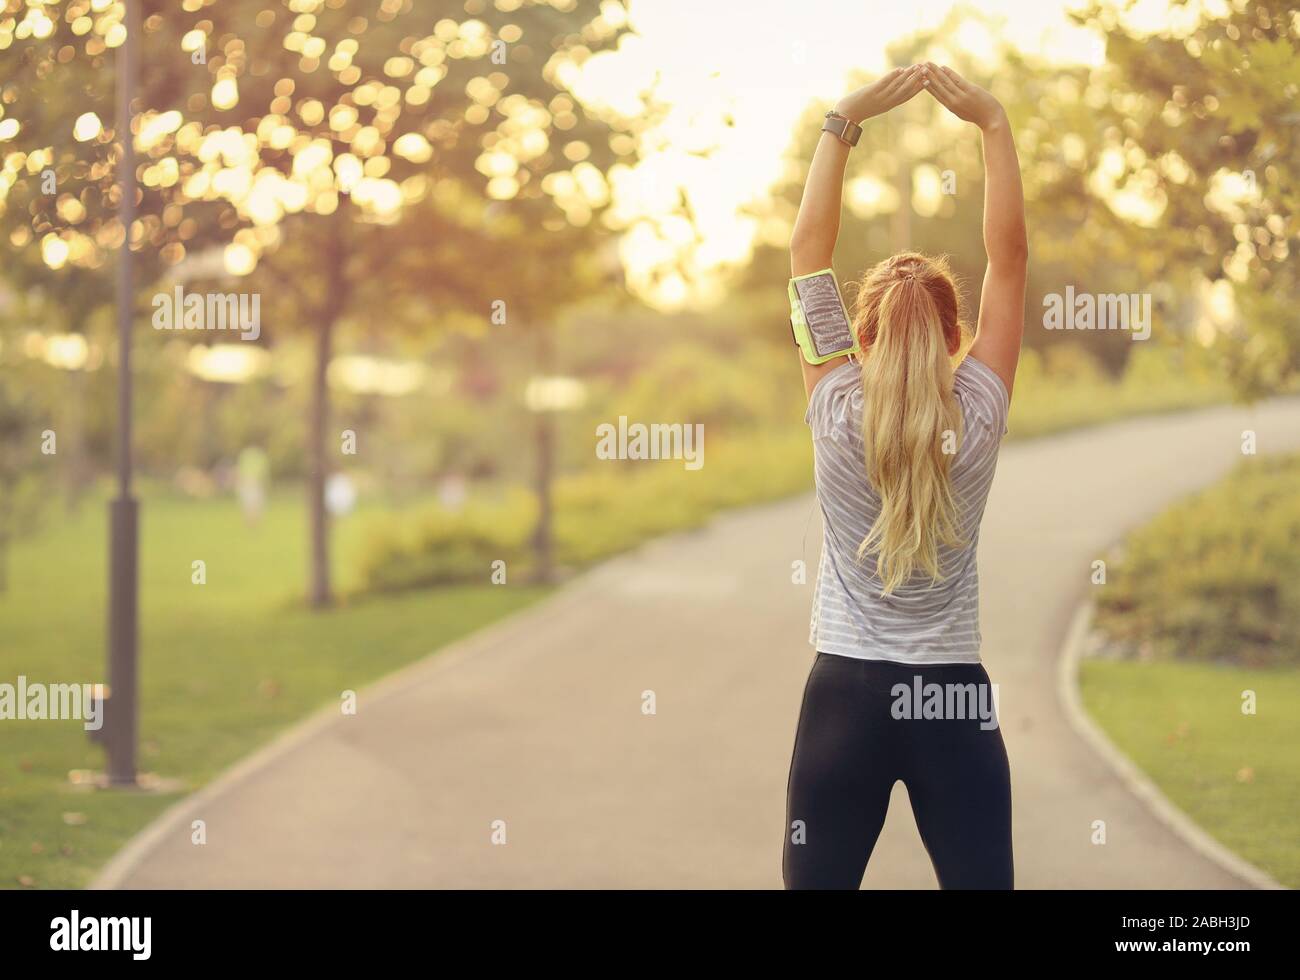 Fit young woman running in park - jolie blonde faisant des exercices d'étirement à l'extérieur - concept de vie sain Banque D'Images